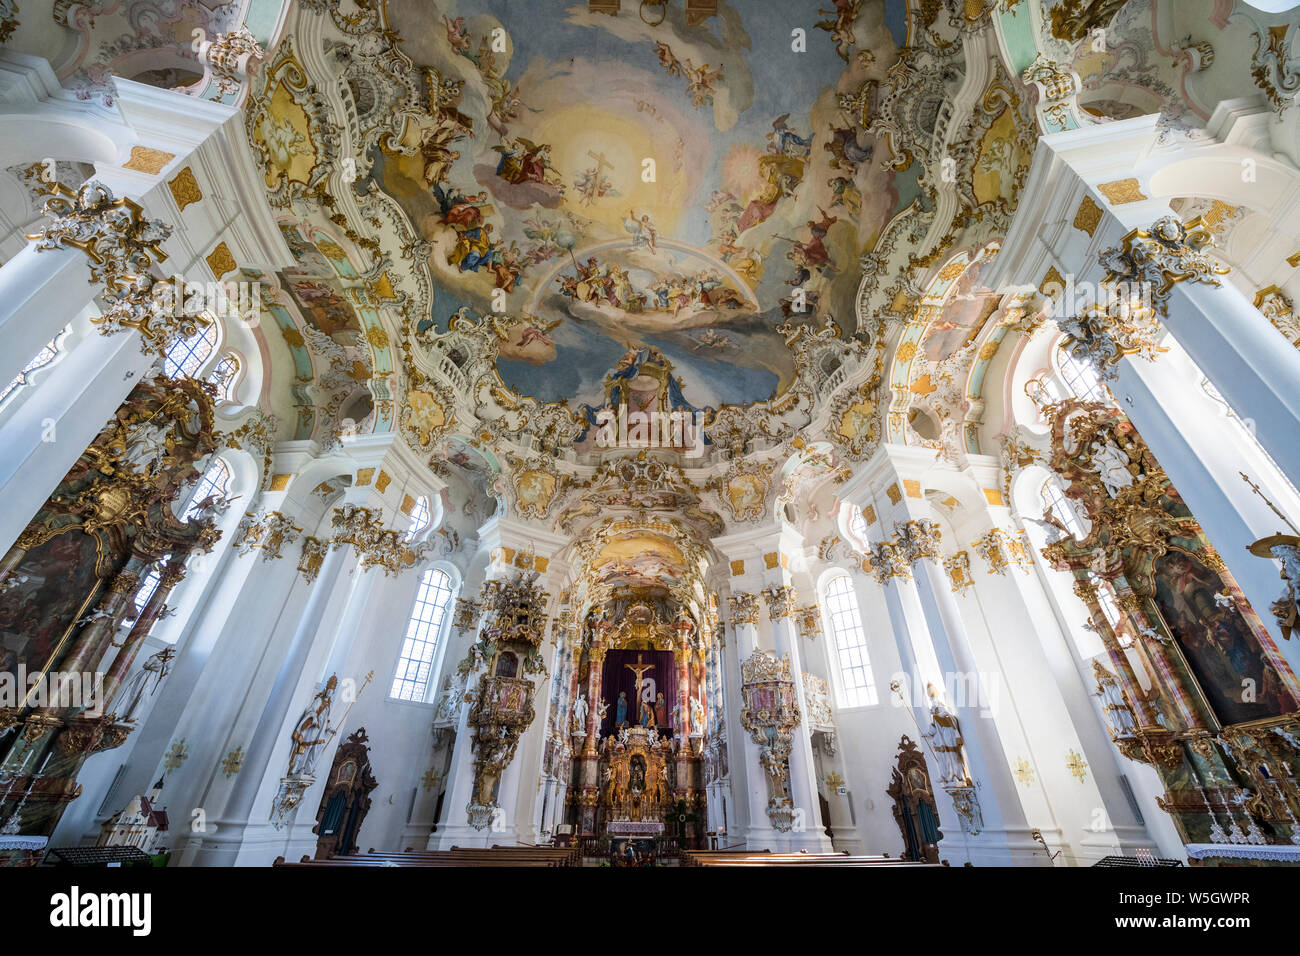 Style Rococo peintures sur le plafond de l'église de pèlerinage de Wies, UNESCO World Heritage Site, Steingaden, Bavaria, Germany, Europe Banque D'Images